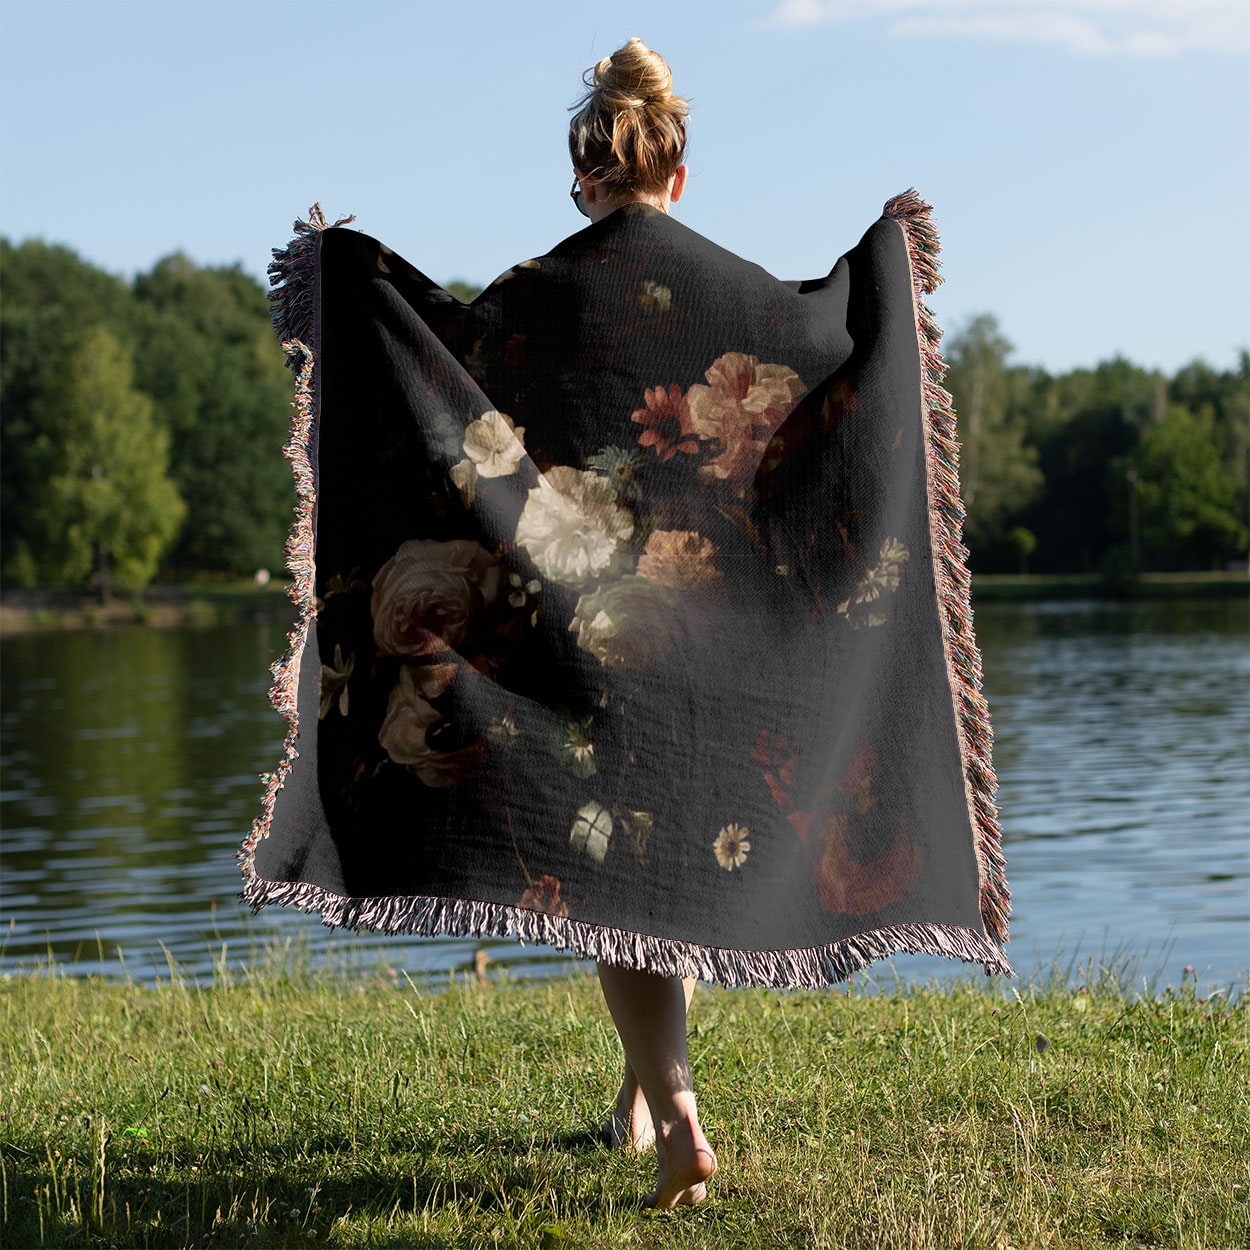 Dark Flowers Woven Blanket Held on a Woman's Back Outside